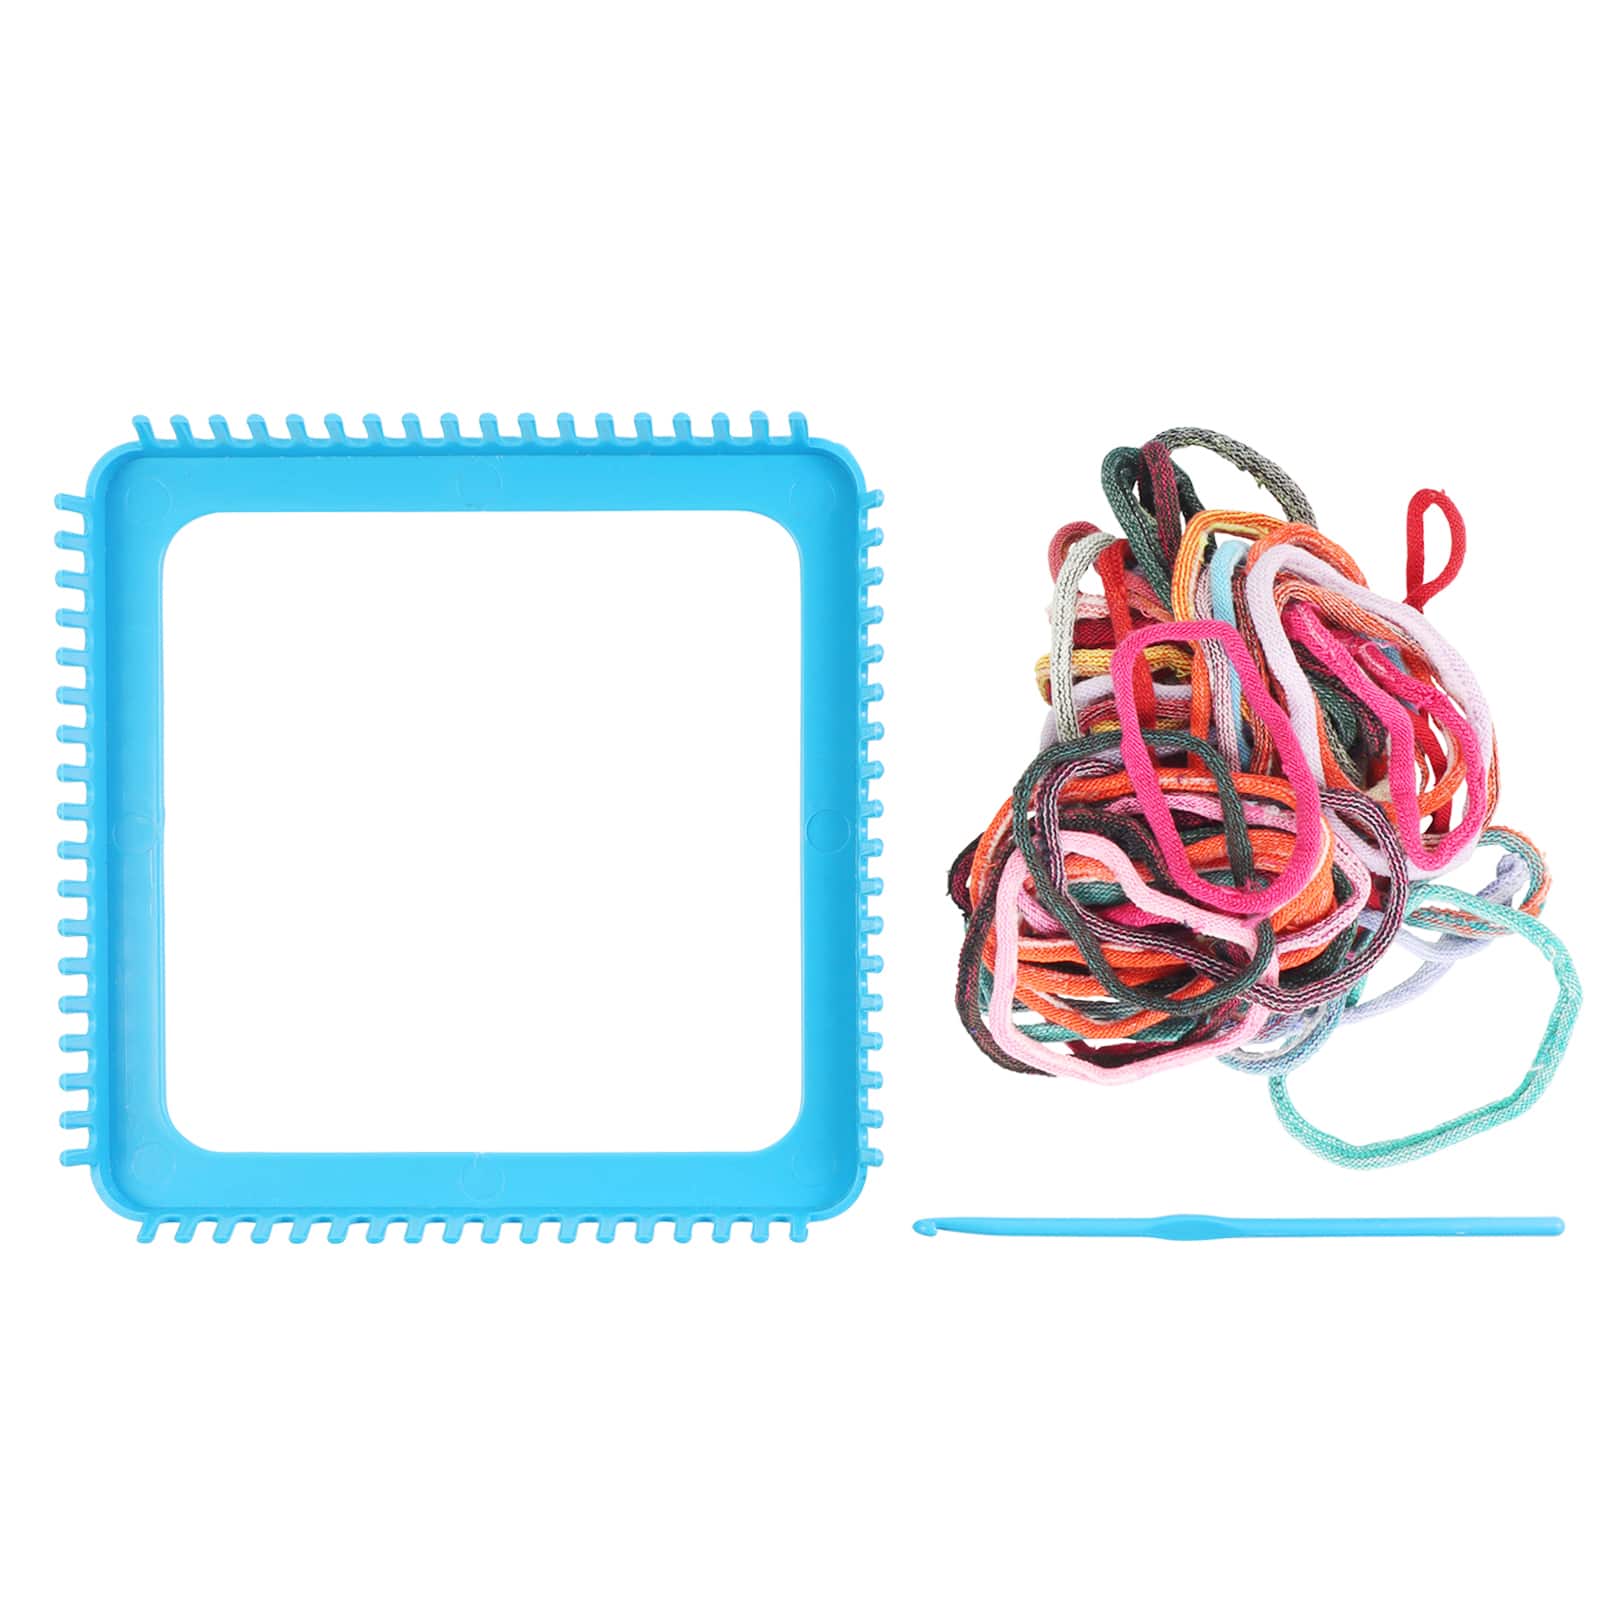 12 Colors Loop Potholder Loops Weaving Loom Loops Bulk Weaving Craft Loops with Multiple Colors for DIY Crafts Supplies, Size: 6x6cm